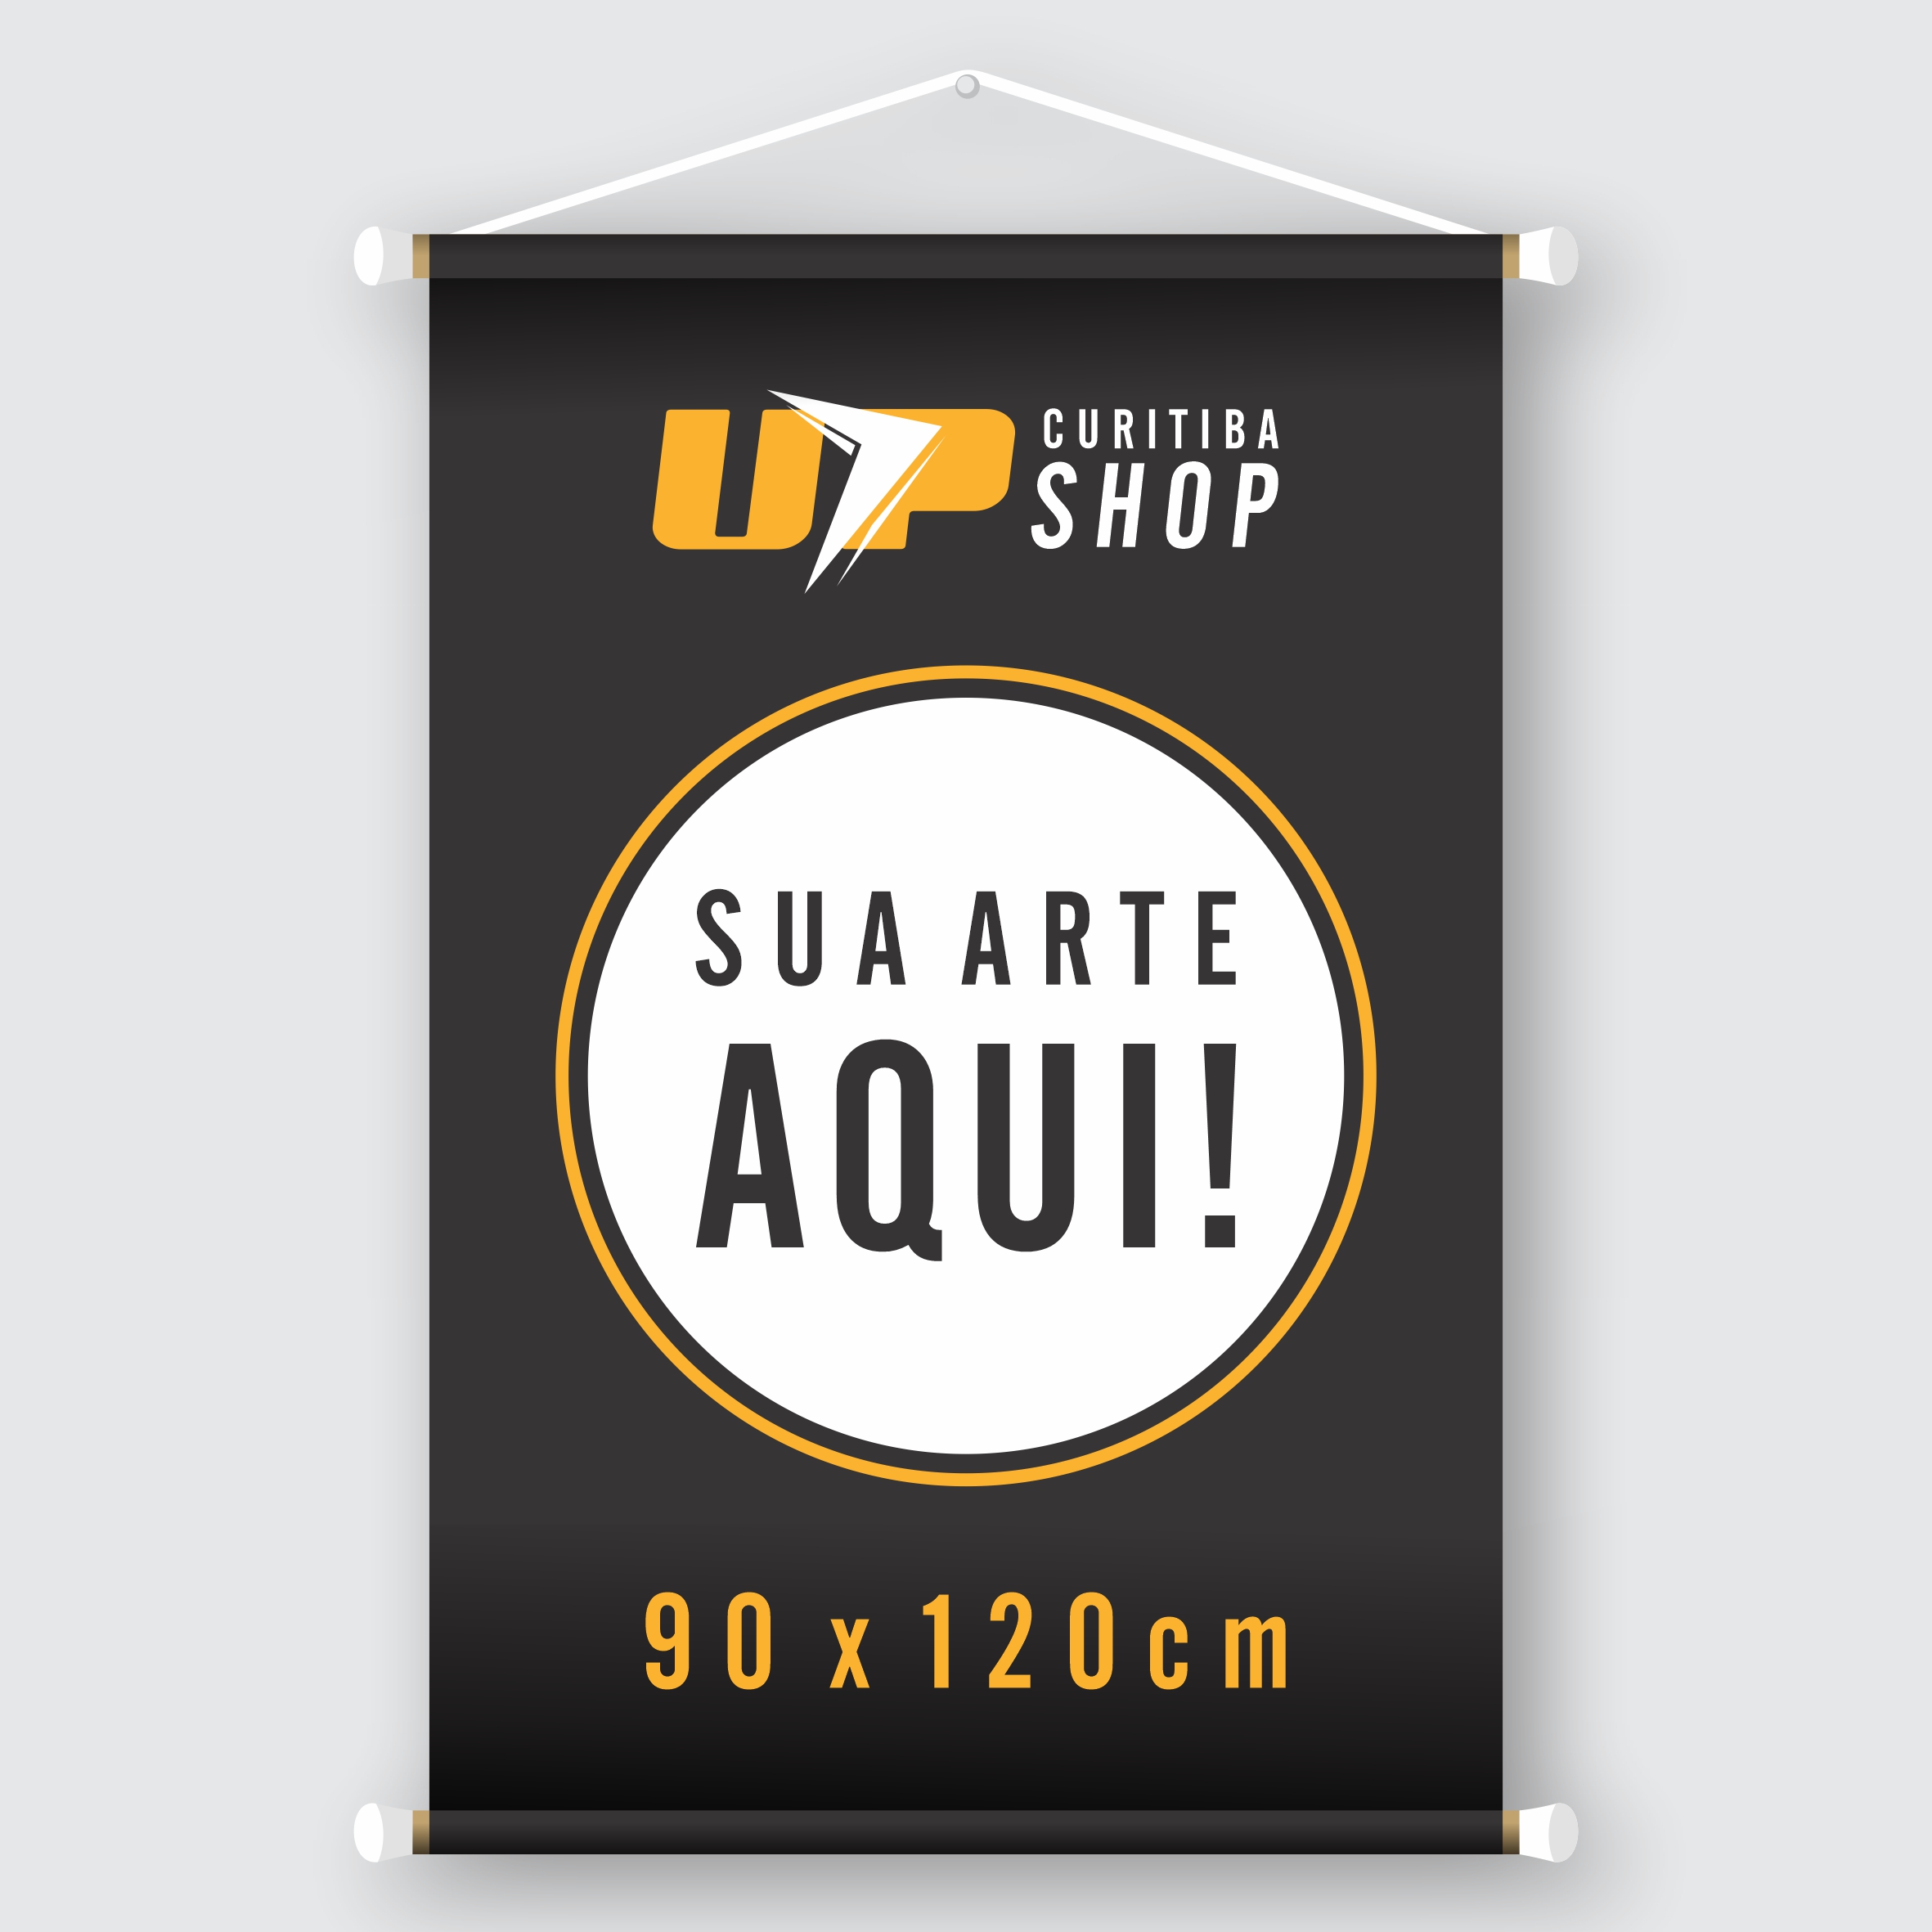 Banner 90 x 120cm Feito em Impressão Digital - UP Curitiba Shop